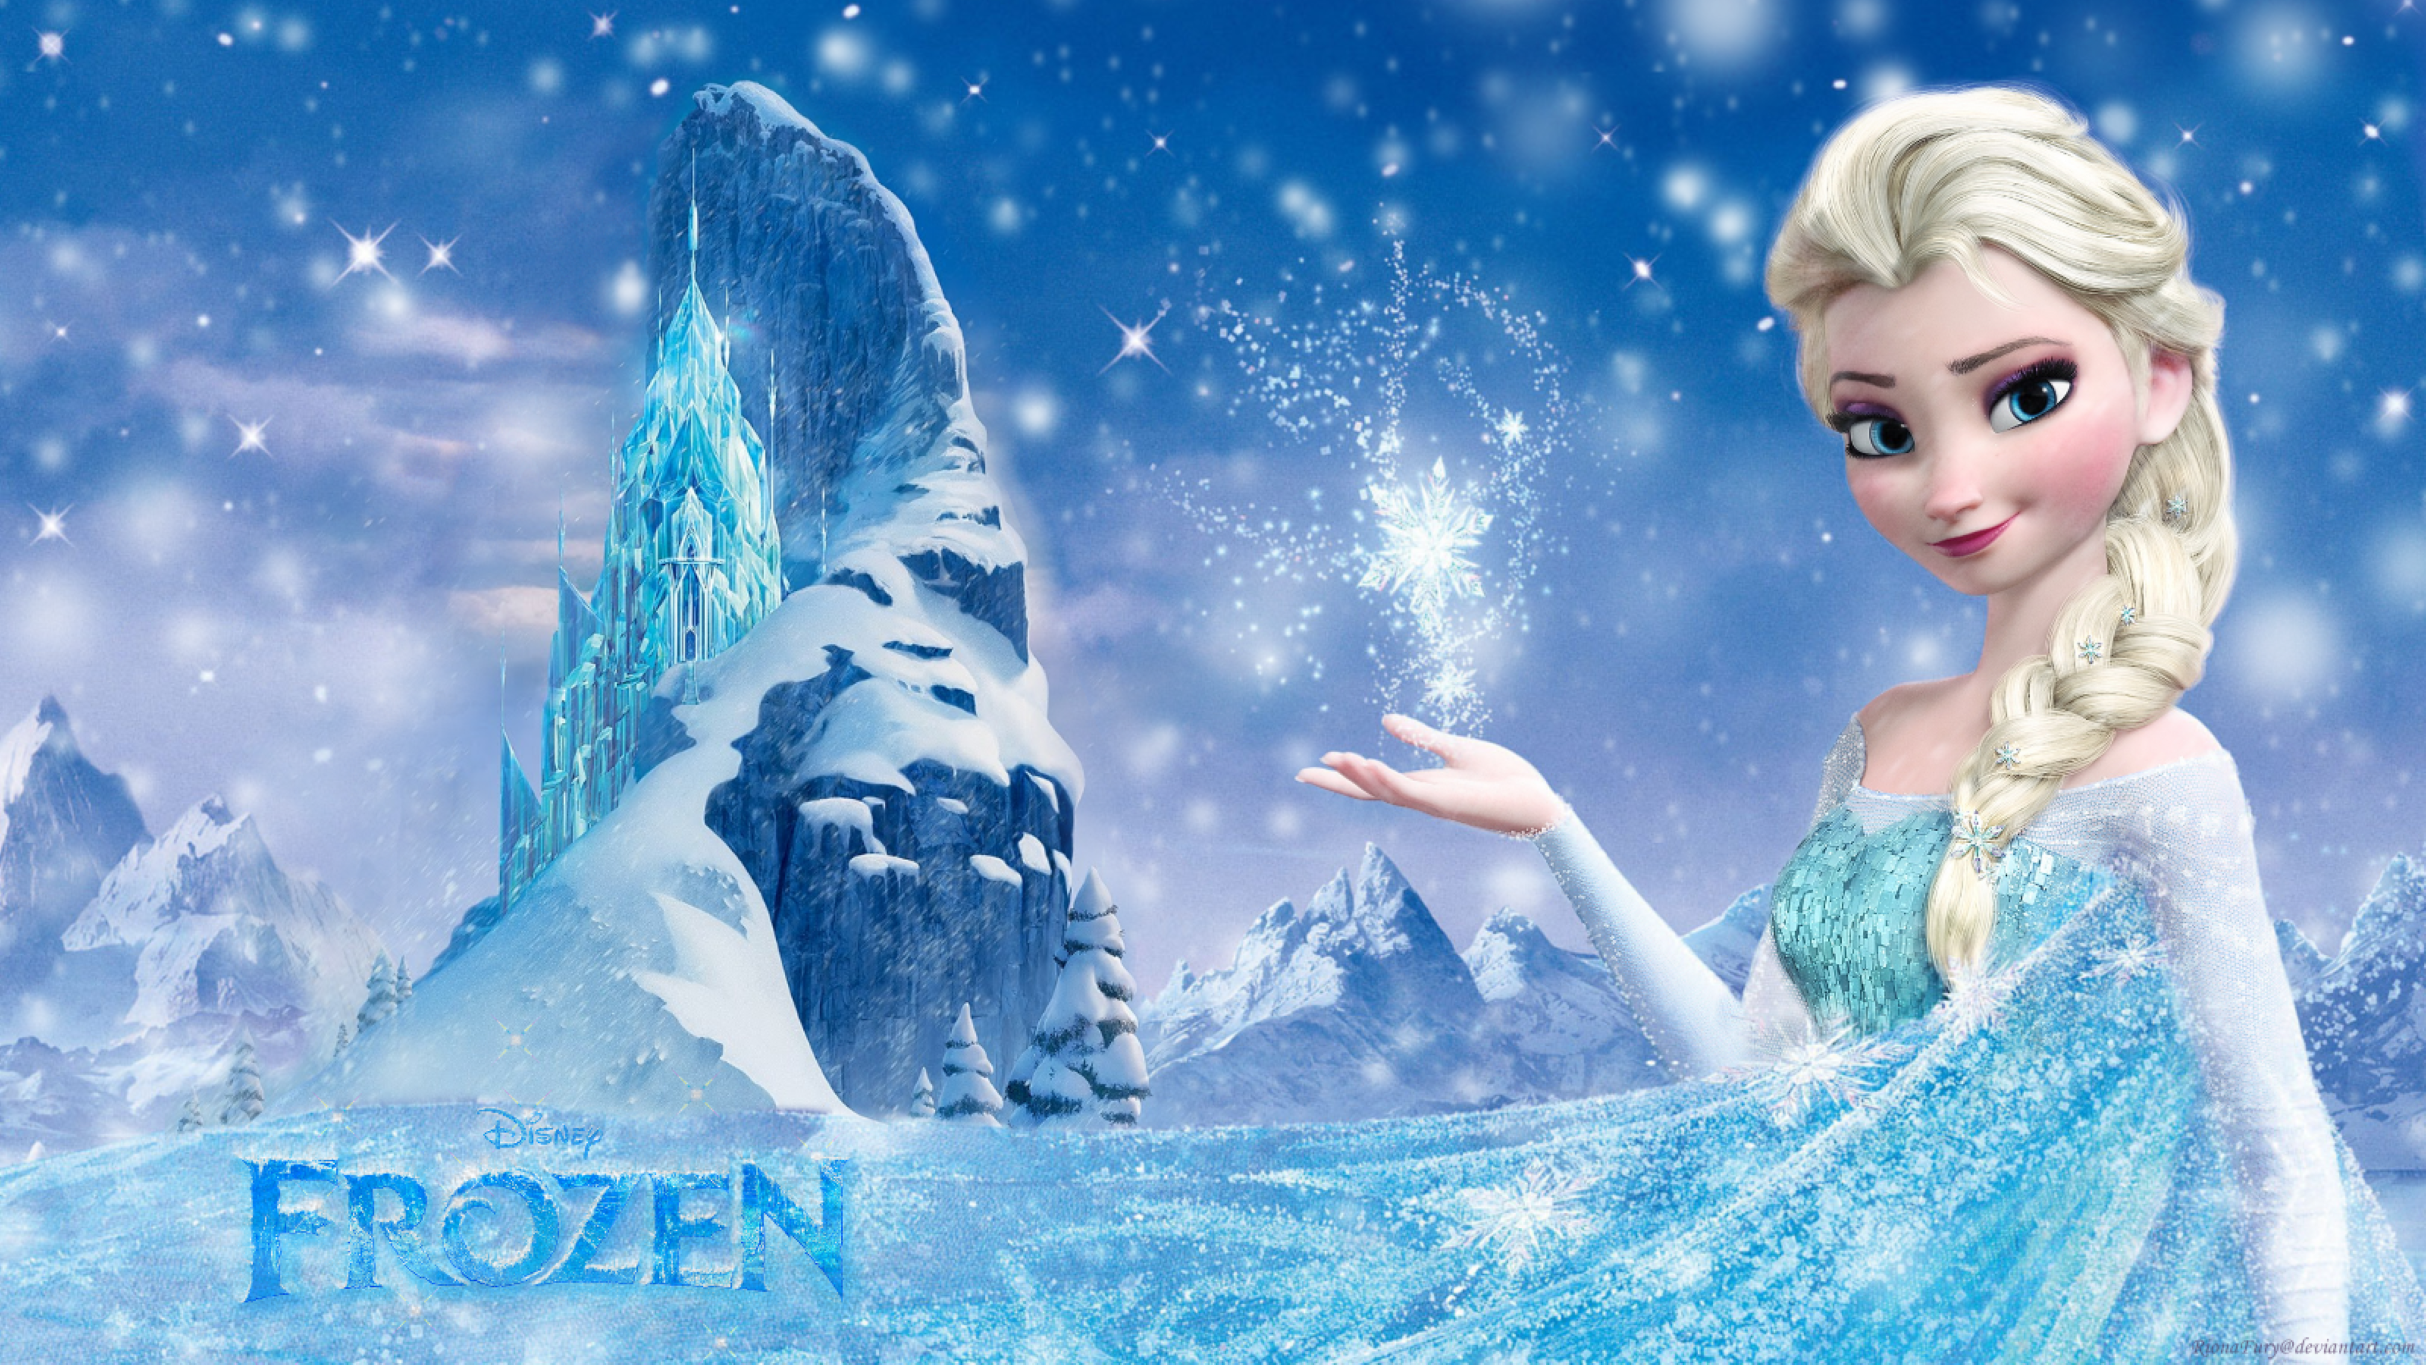 Disney in Concert: Frozen presales in Toronto